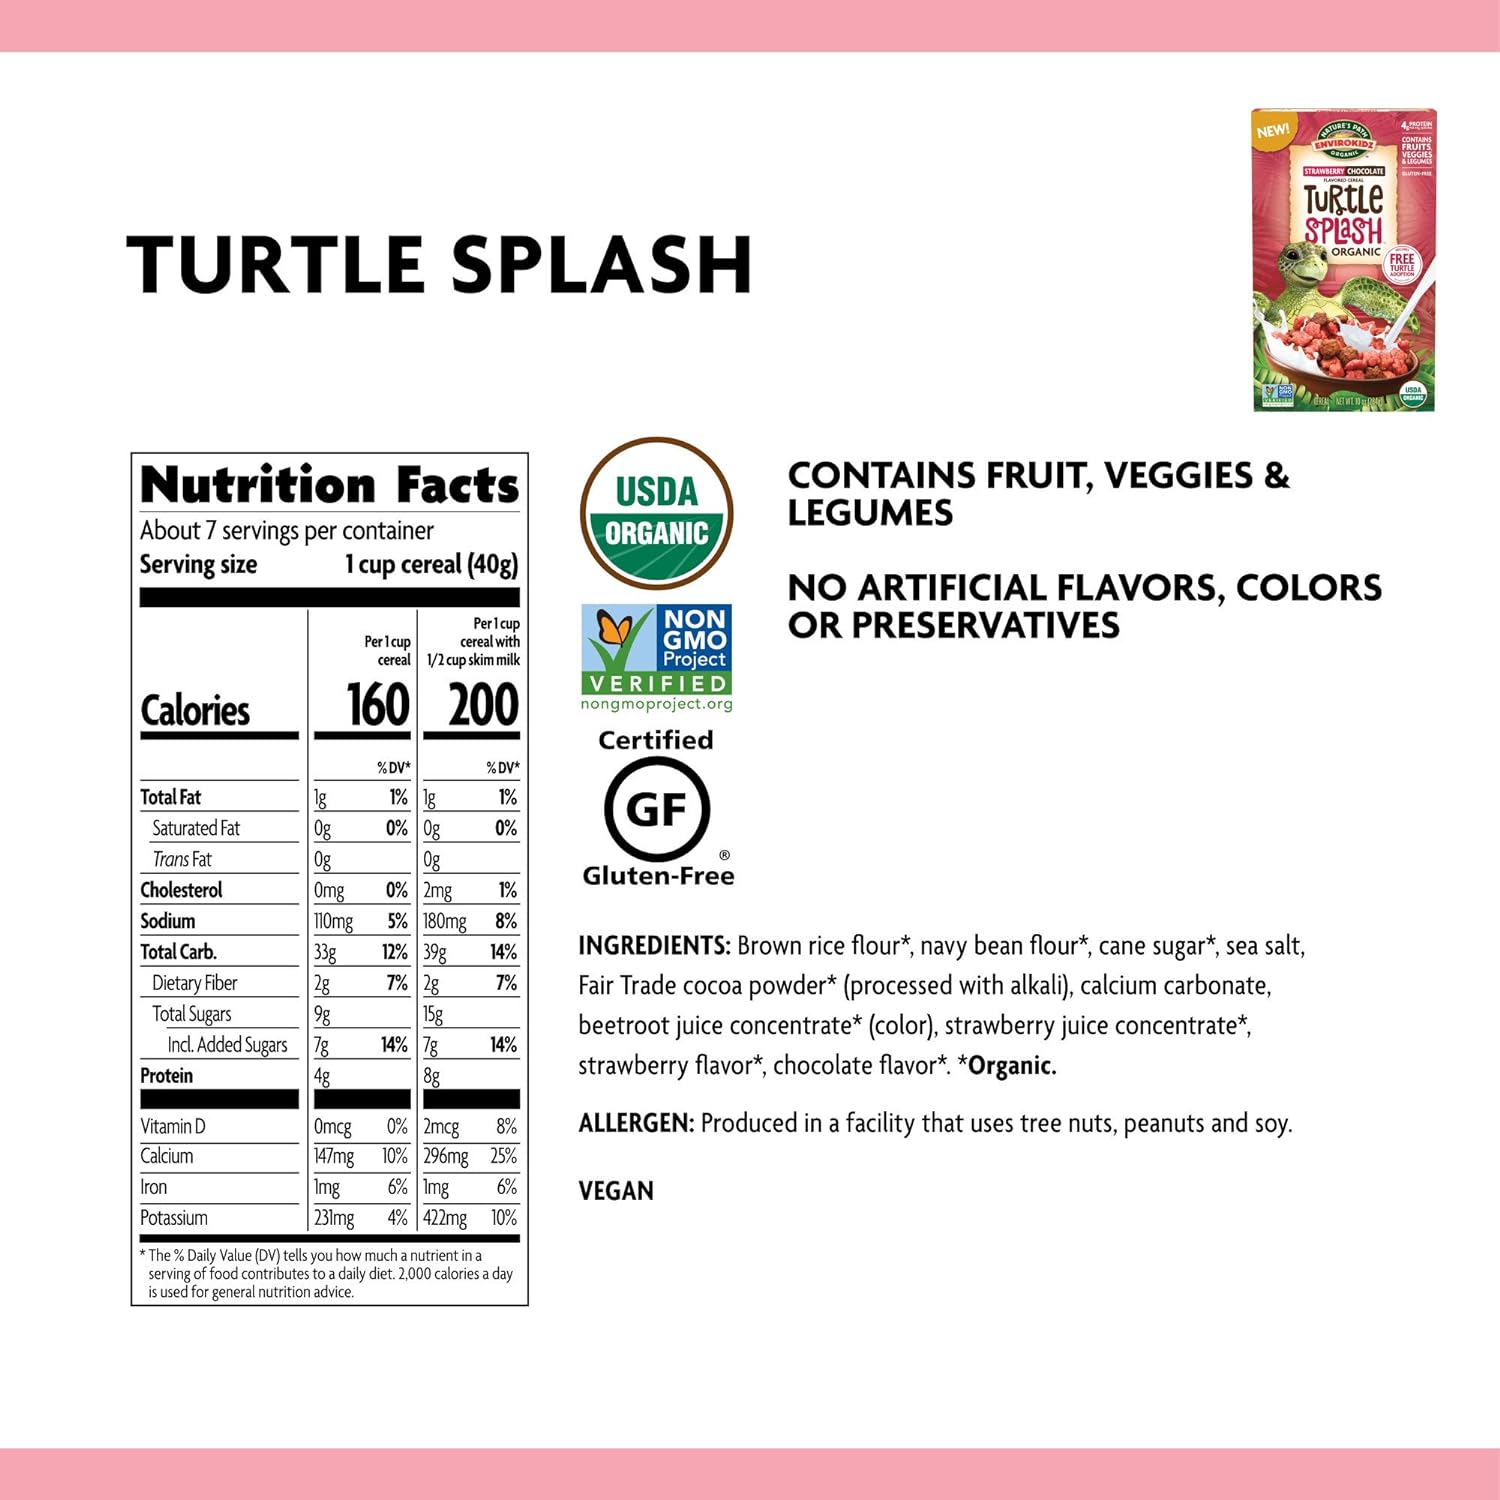 EnviroKidz Turtle Splash Organic Strawberry Chocolate Cereal, 10 Ounce (Pack of 12), Gluten Free, Non-GMO, EnviroKidz by Nature's Path